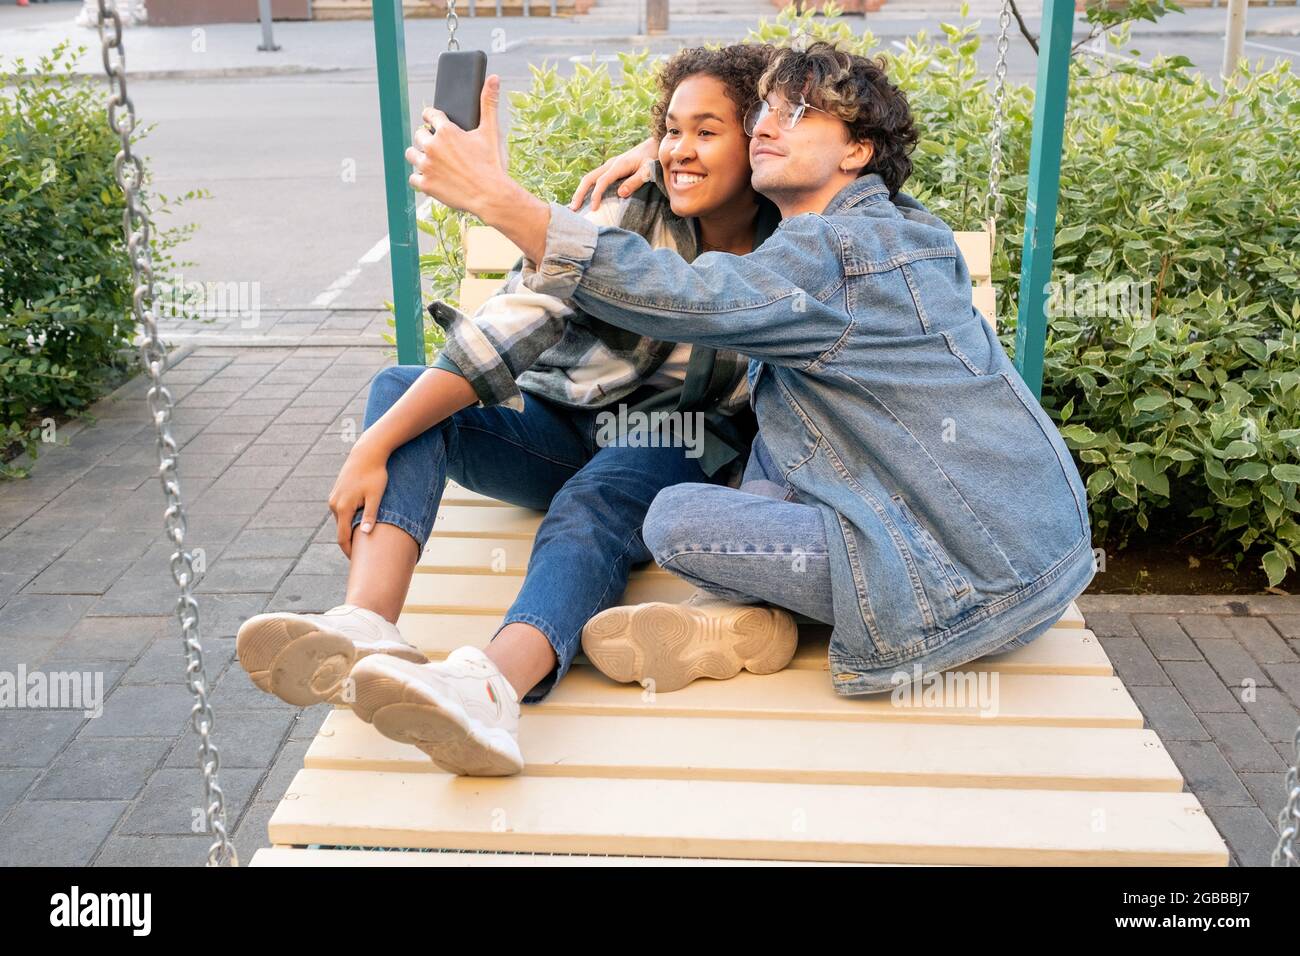 Unbeschwerte Teenager-Dates machen Selfie auf Schaukeln, während Kerl umarmt seine glückliche Freundin Stockfoto